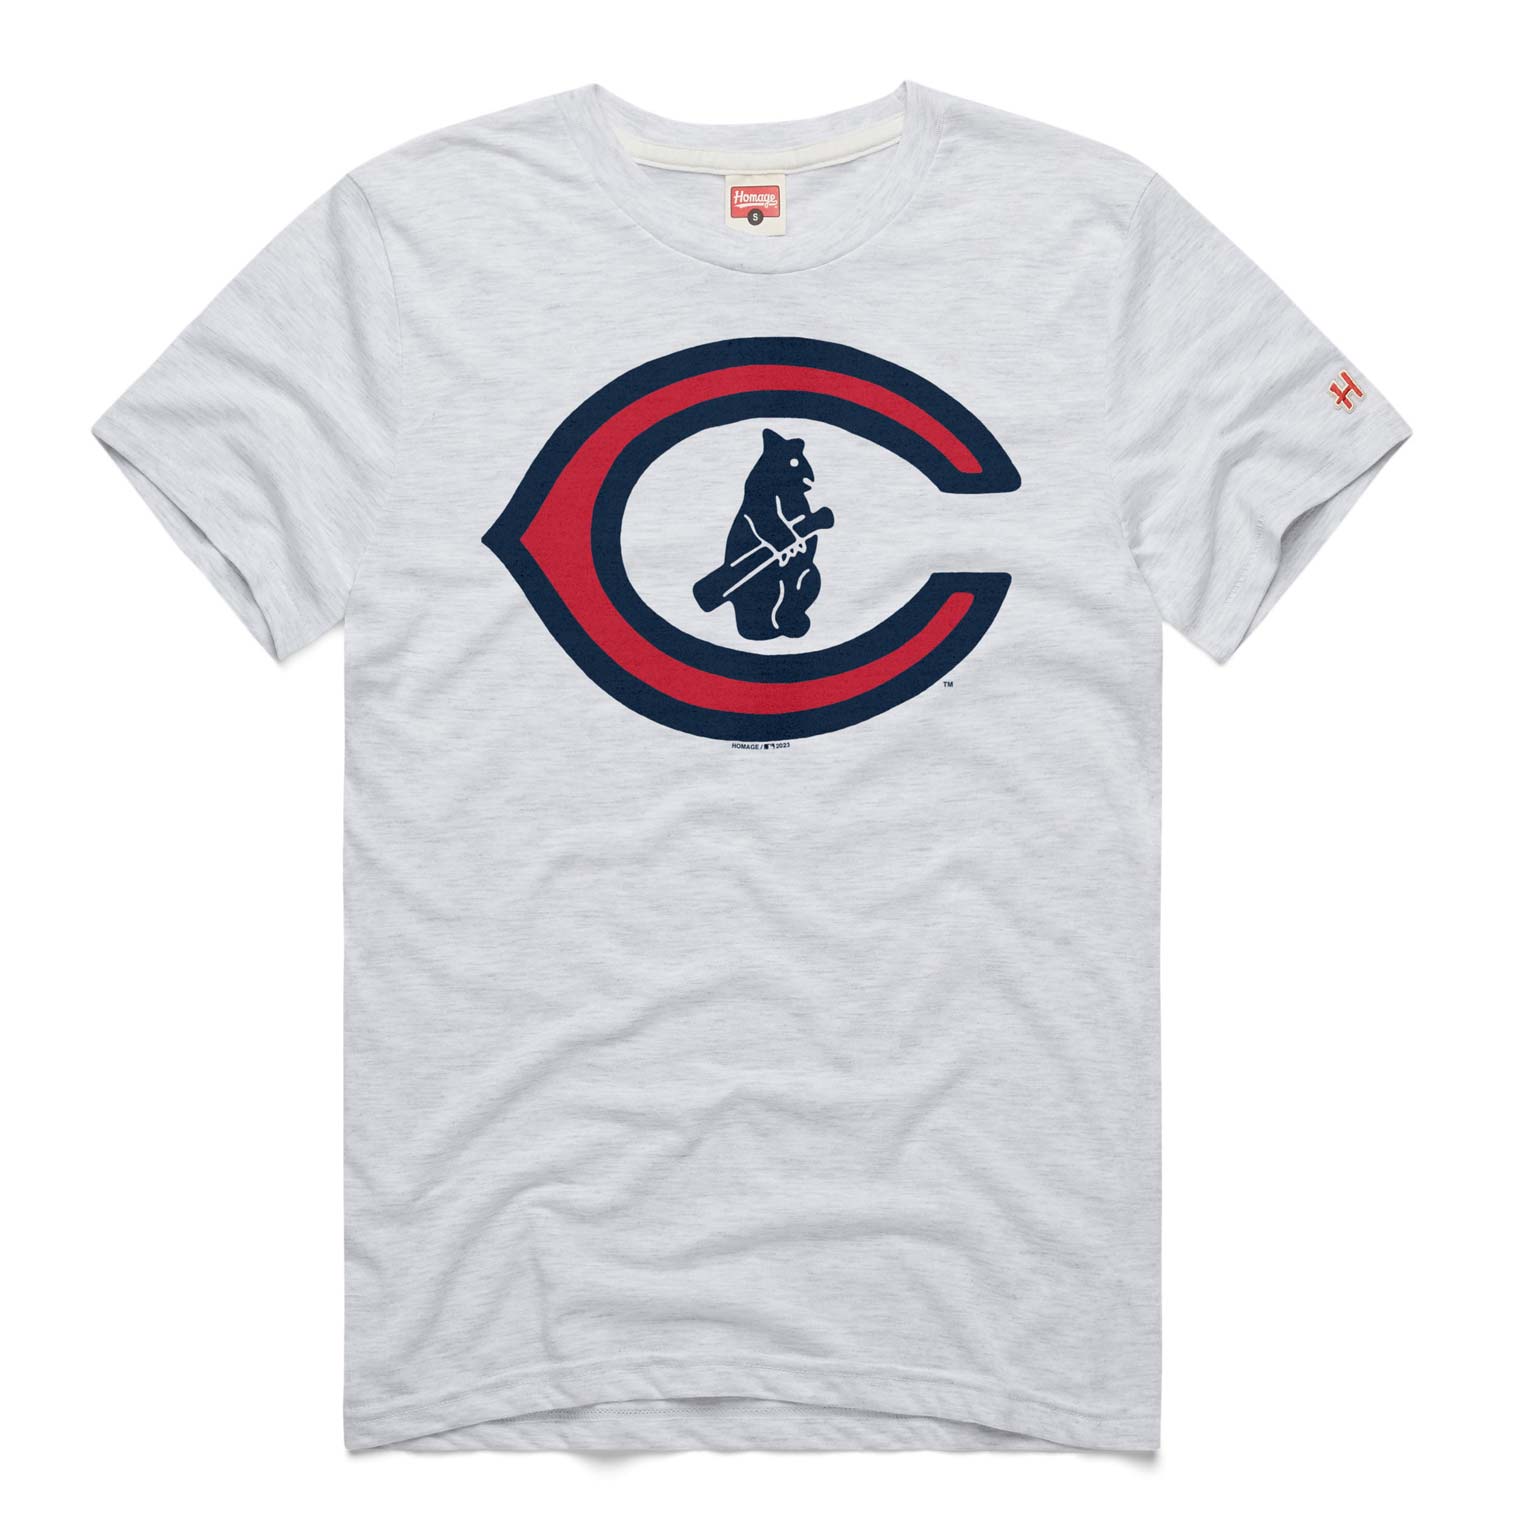 Cubs 1908 T Shirt 